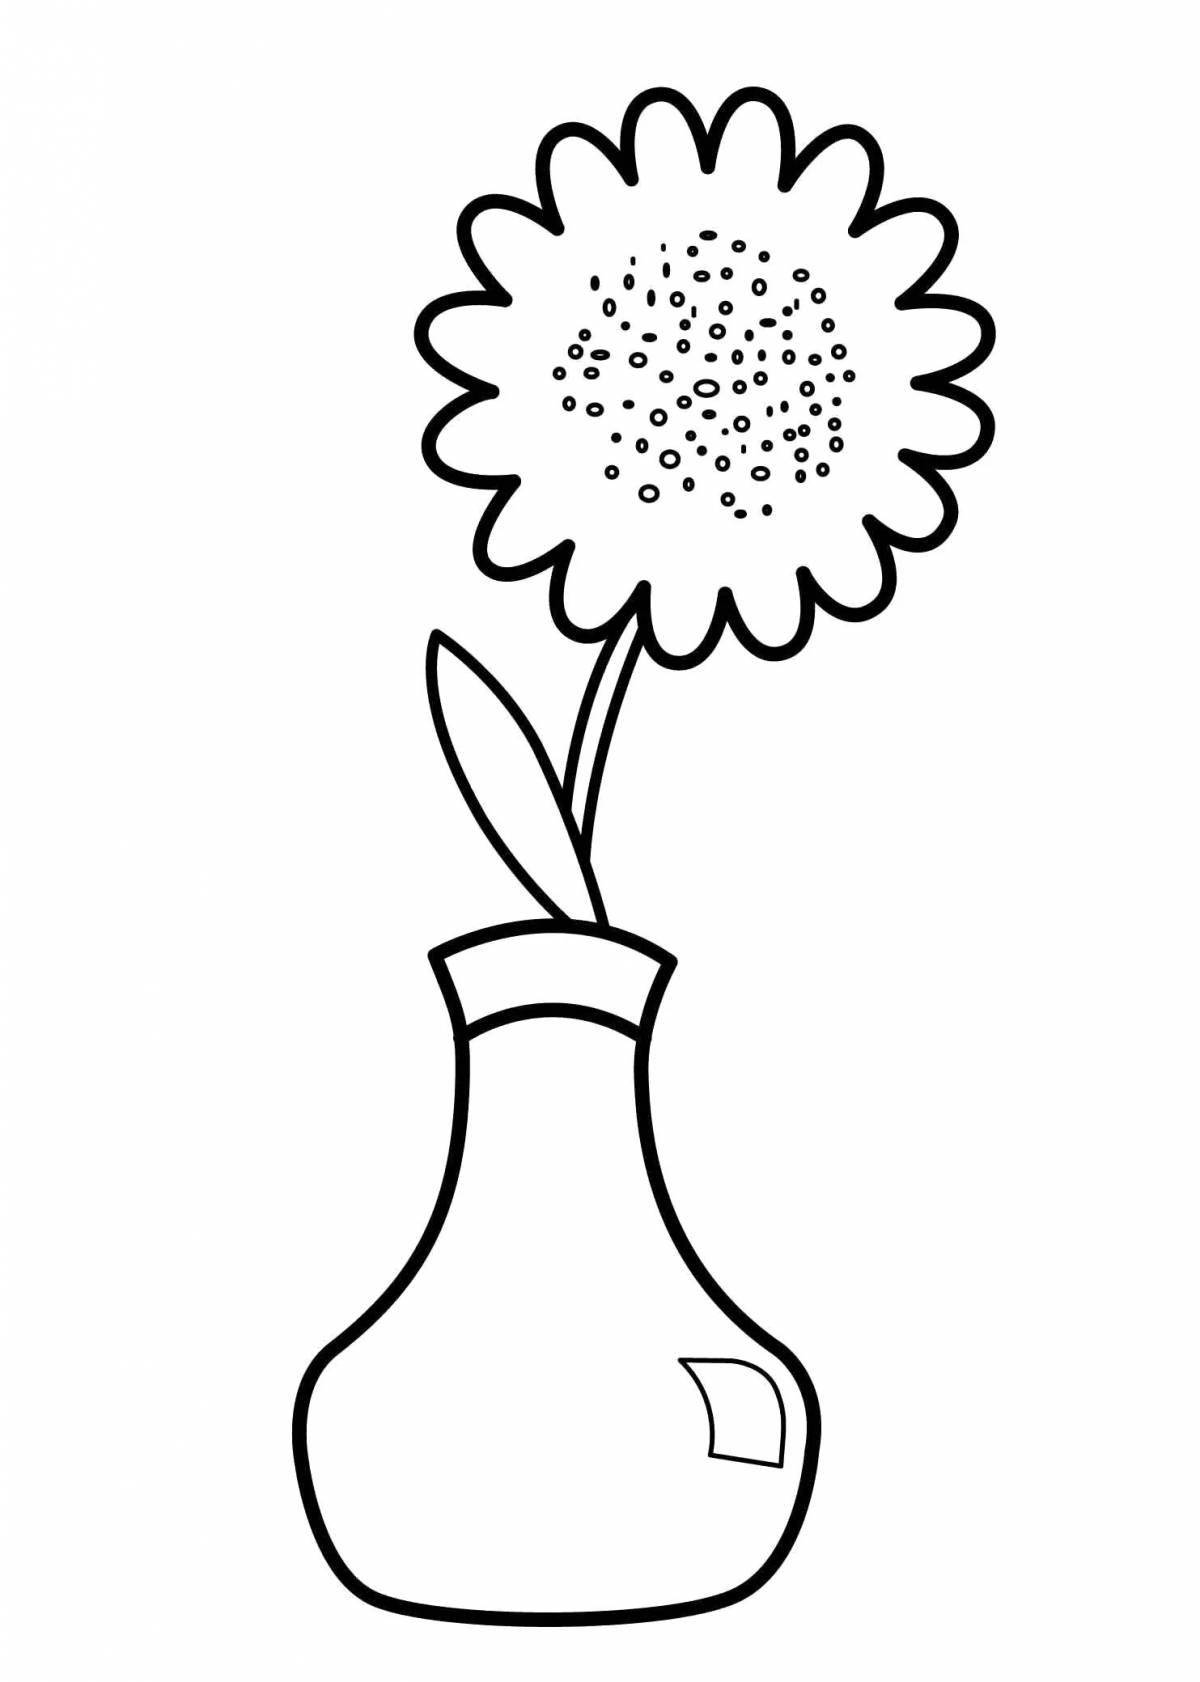 Скачать, распечатать или рисовать онлайн раскраски ваза с цветами